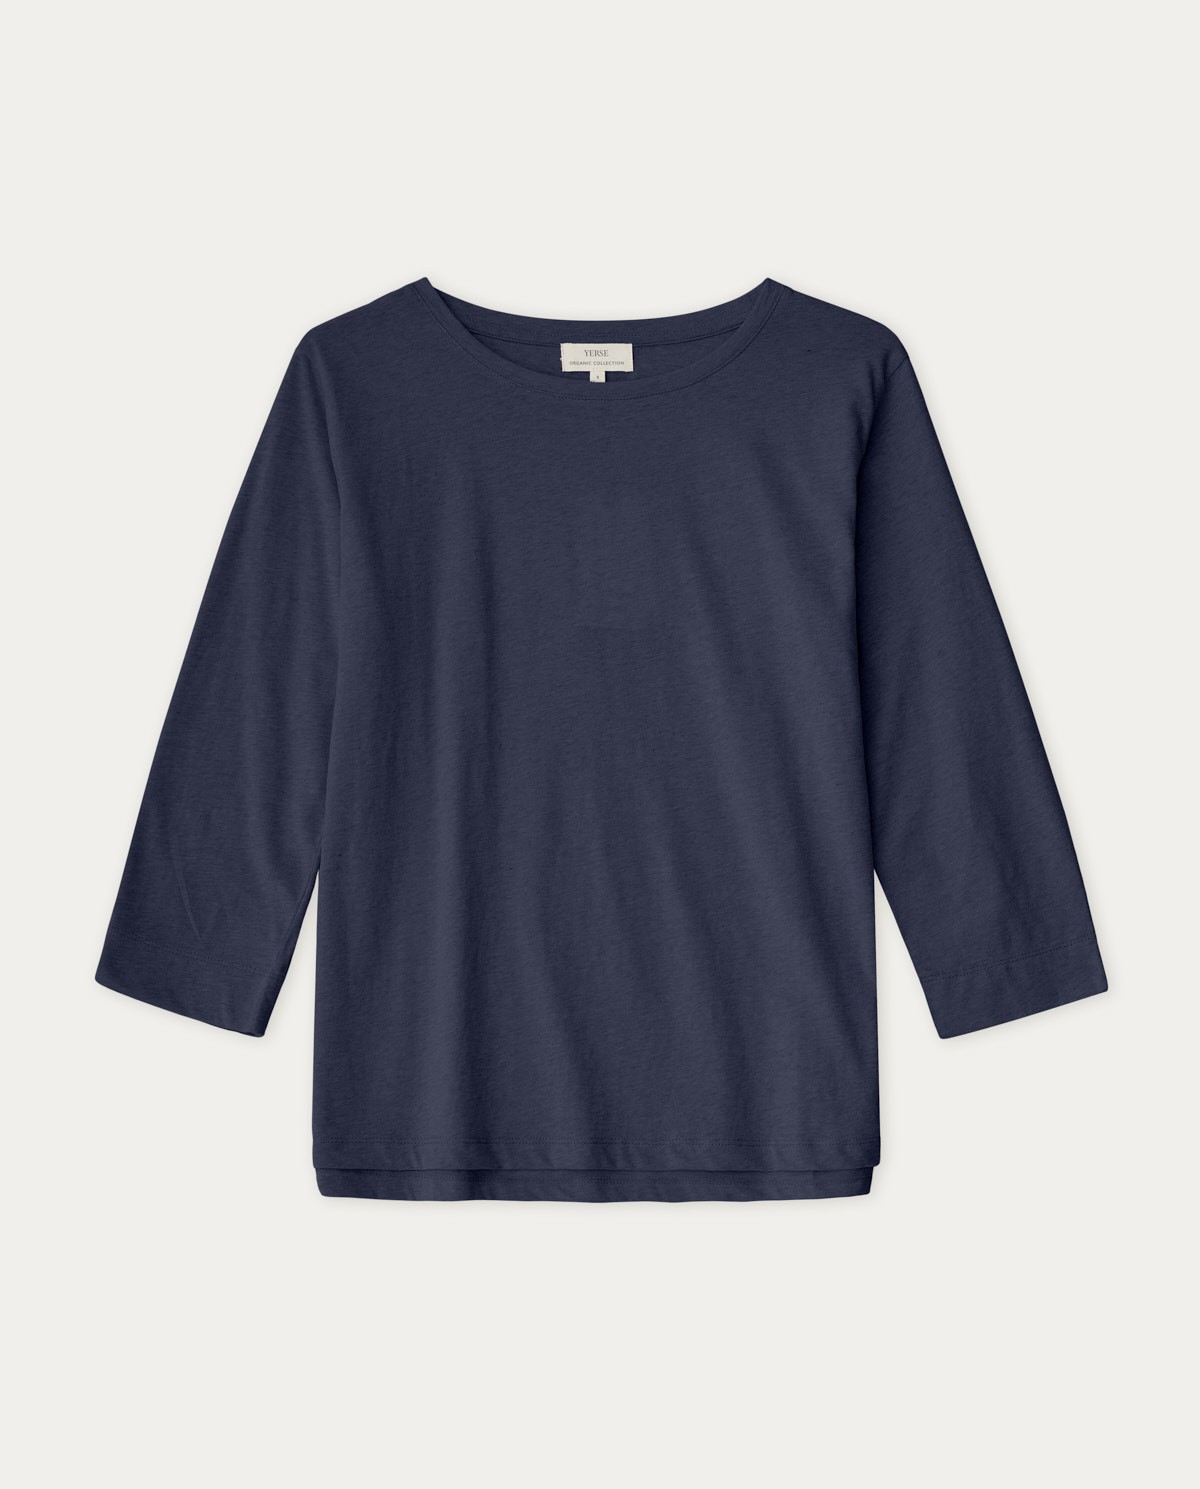 T-shirt coton bio Navy 3